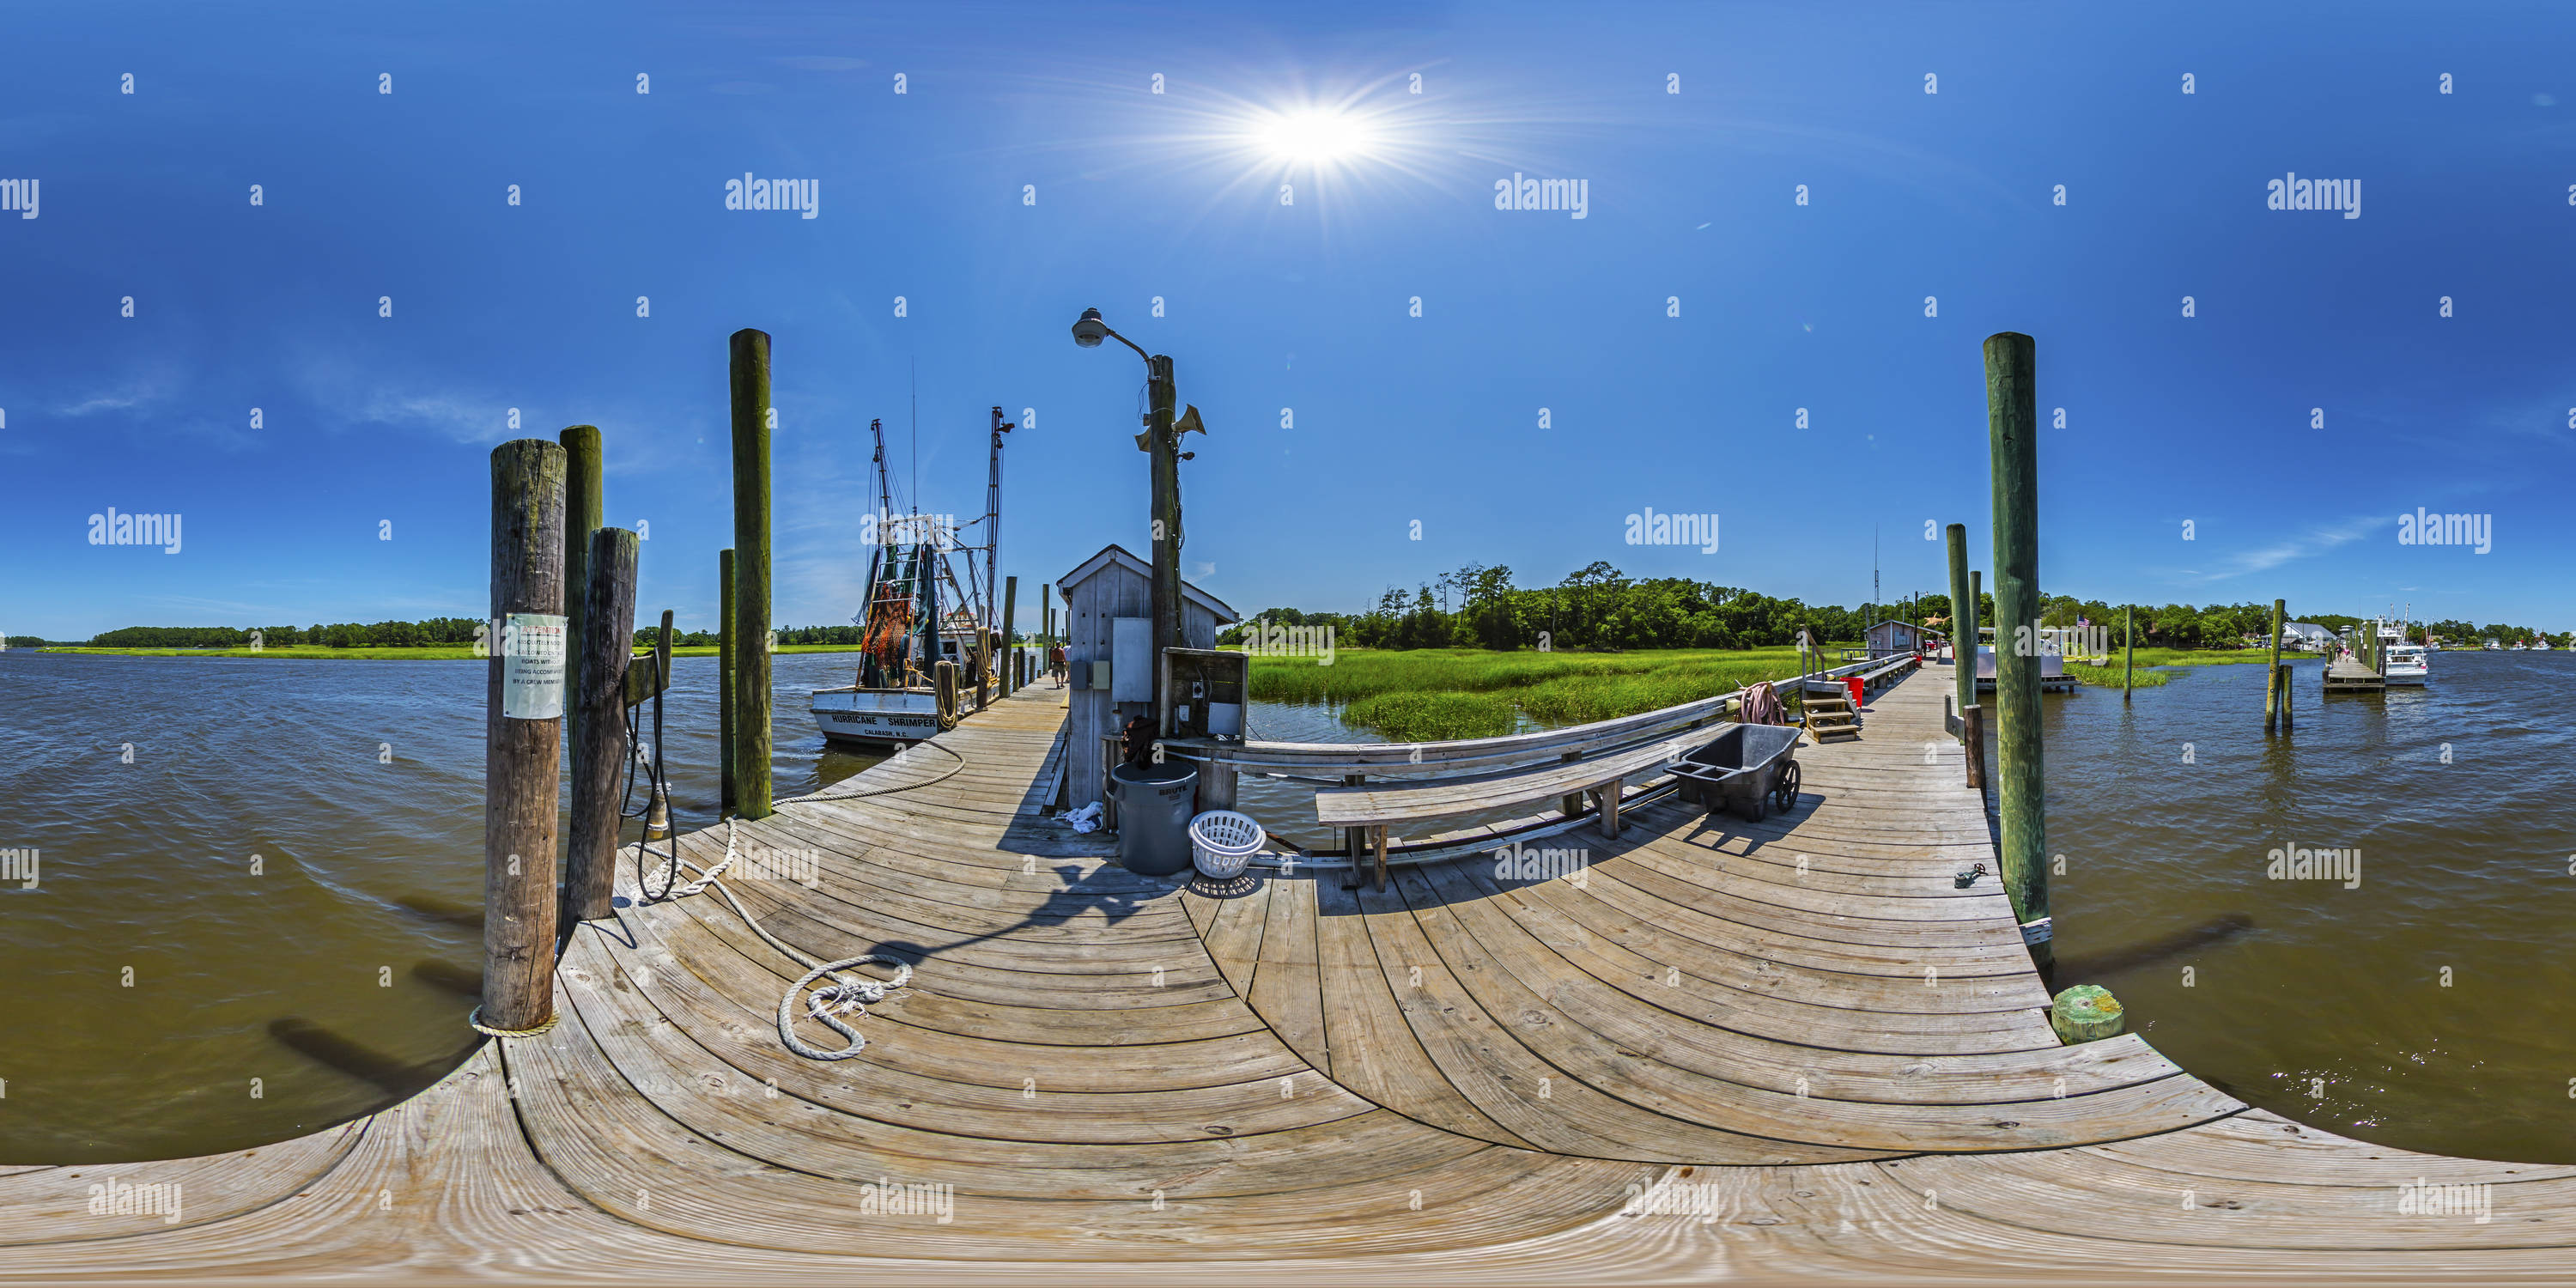 Vista panorámica en 360 grados de Calabash Docks, Calabash, Carolina del Norte